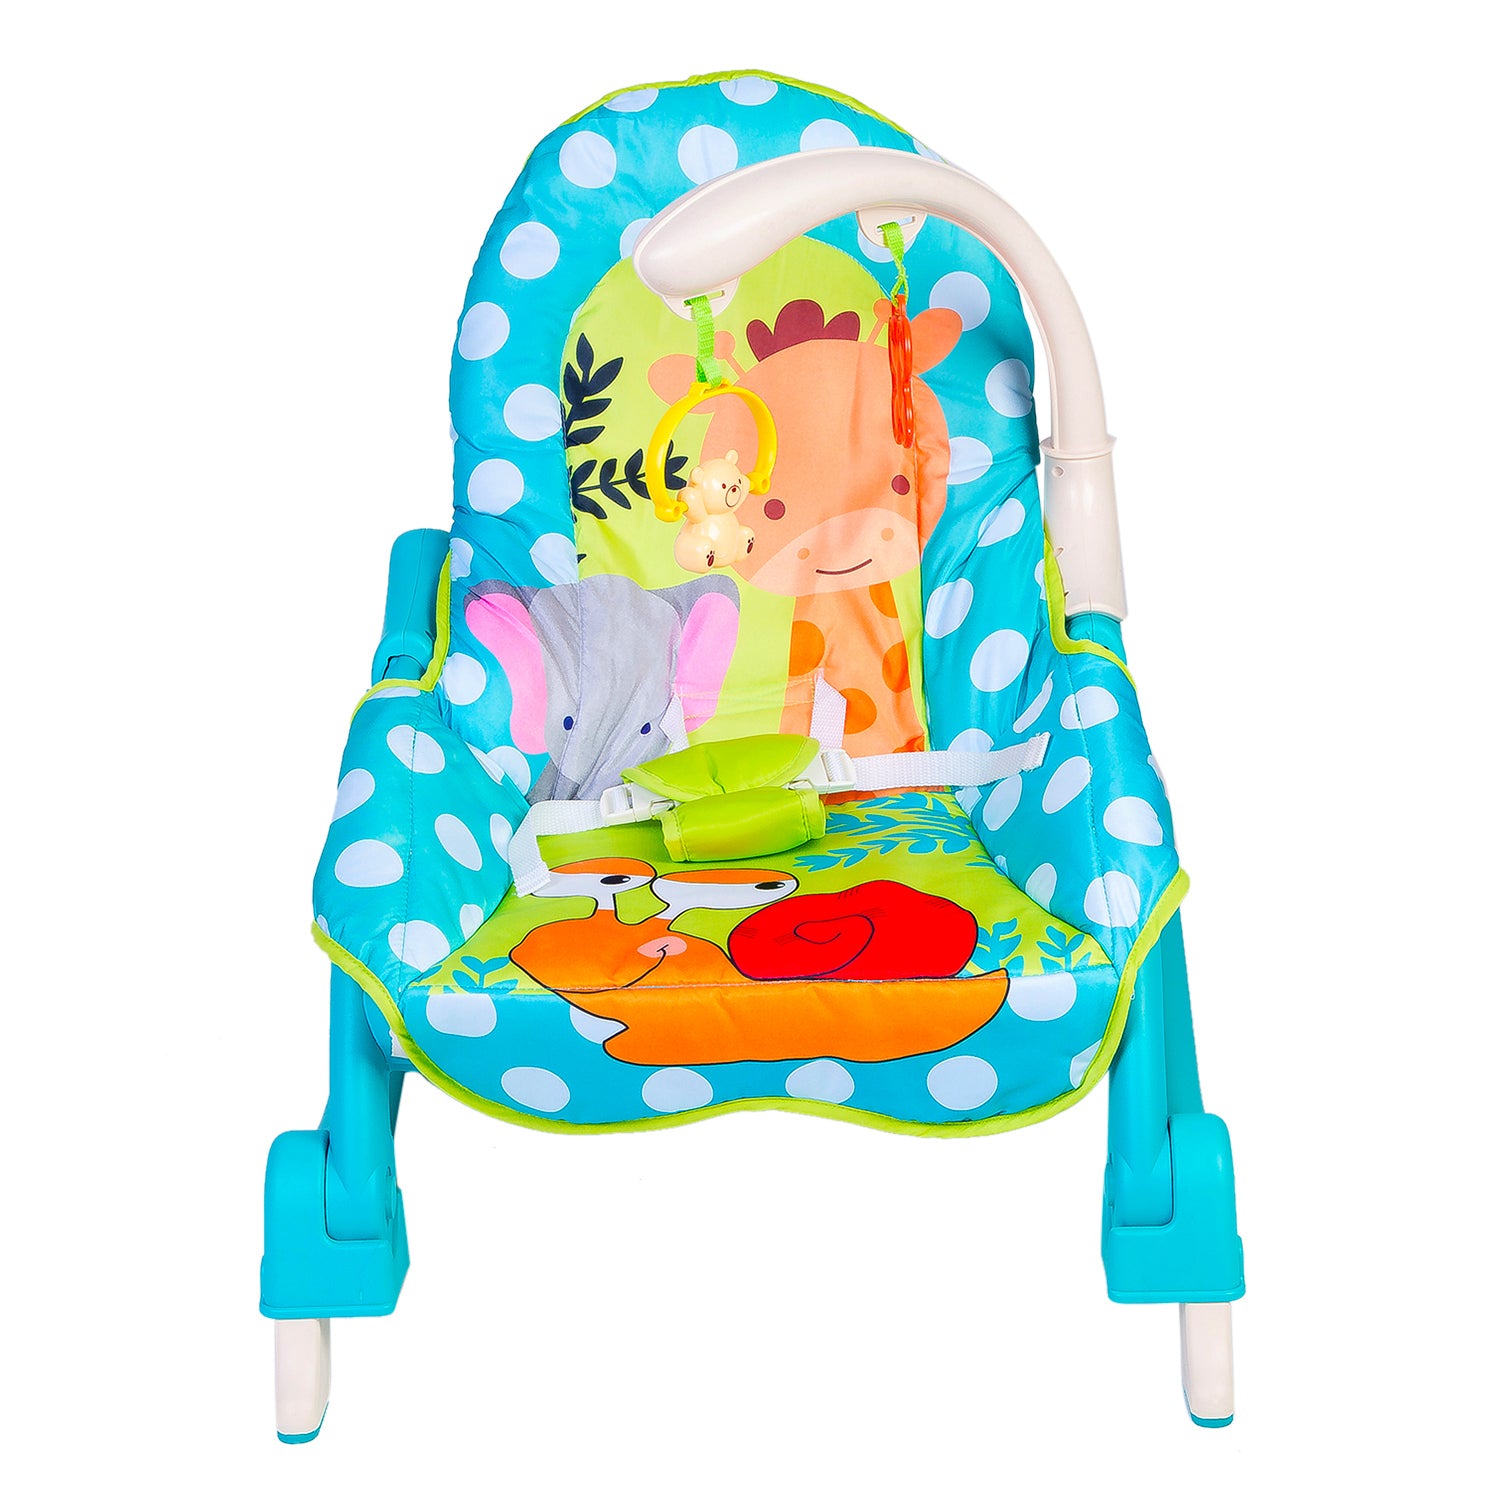 3 Adjustable Level Backrest Musical Baby Rocking Chair Blue Polka Dot